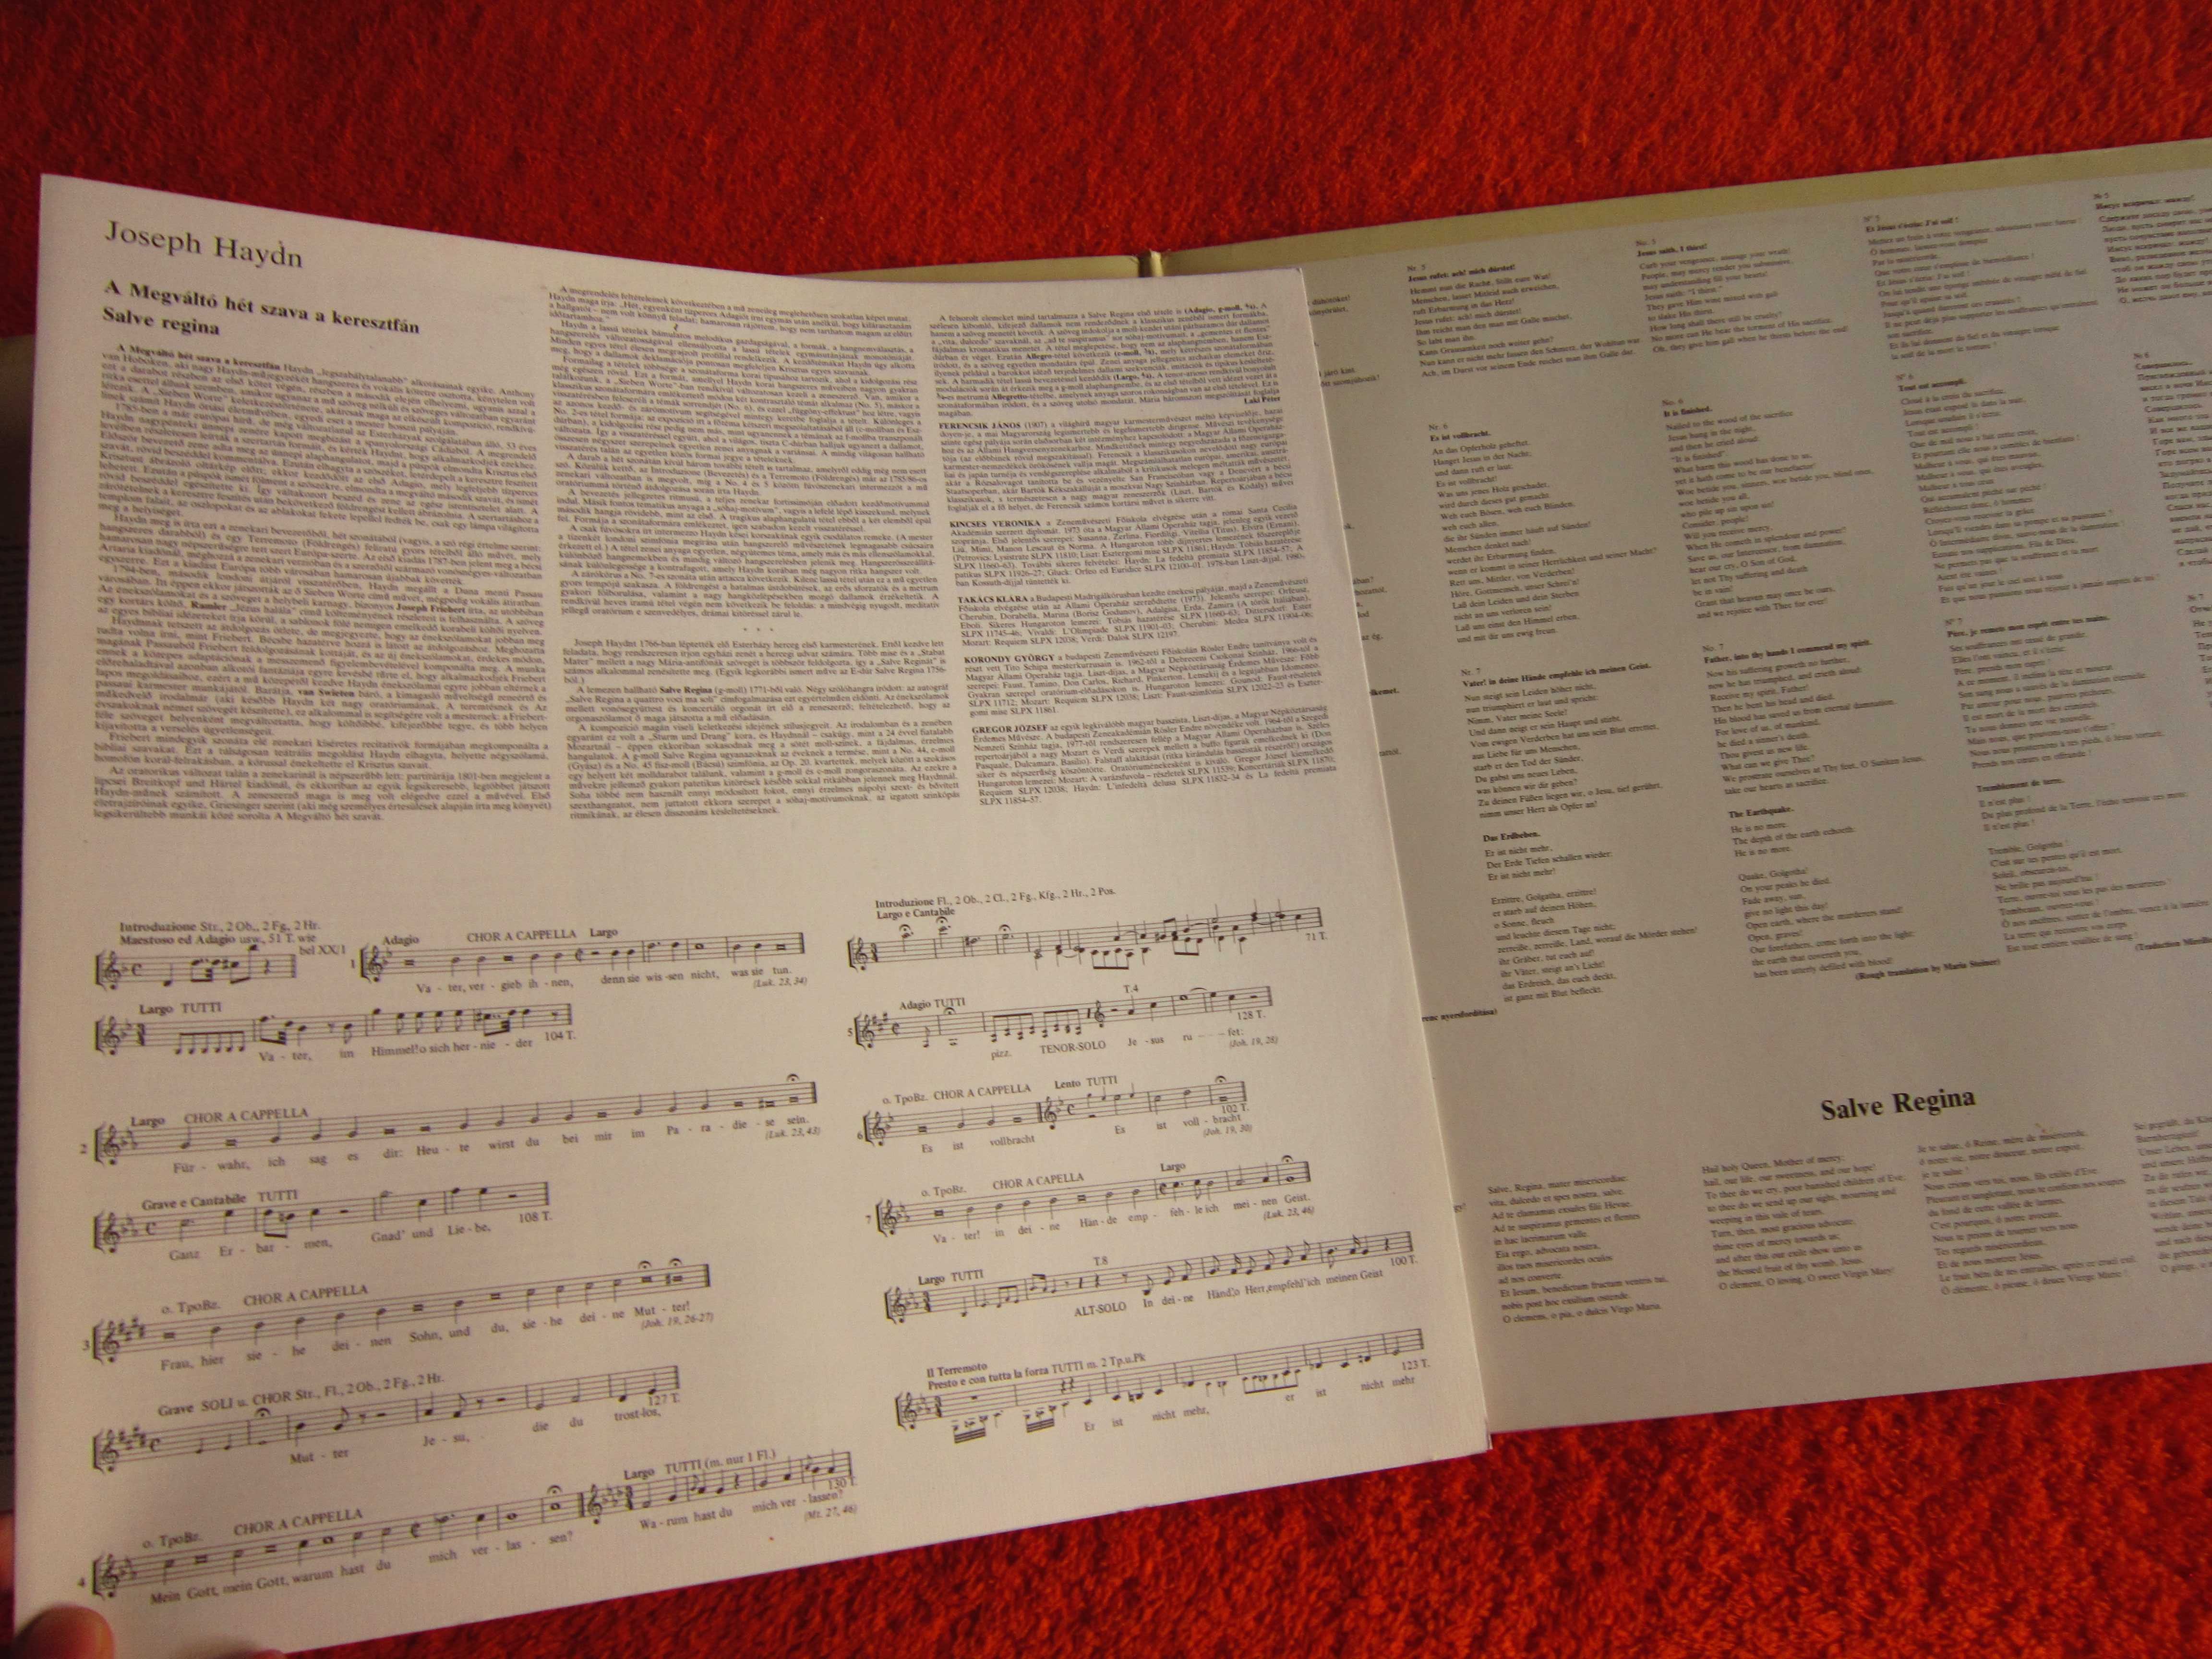 Haydn-7 Last Words Of Christ/Salve Regina 2xLP Ungaria 1980 impecabil